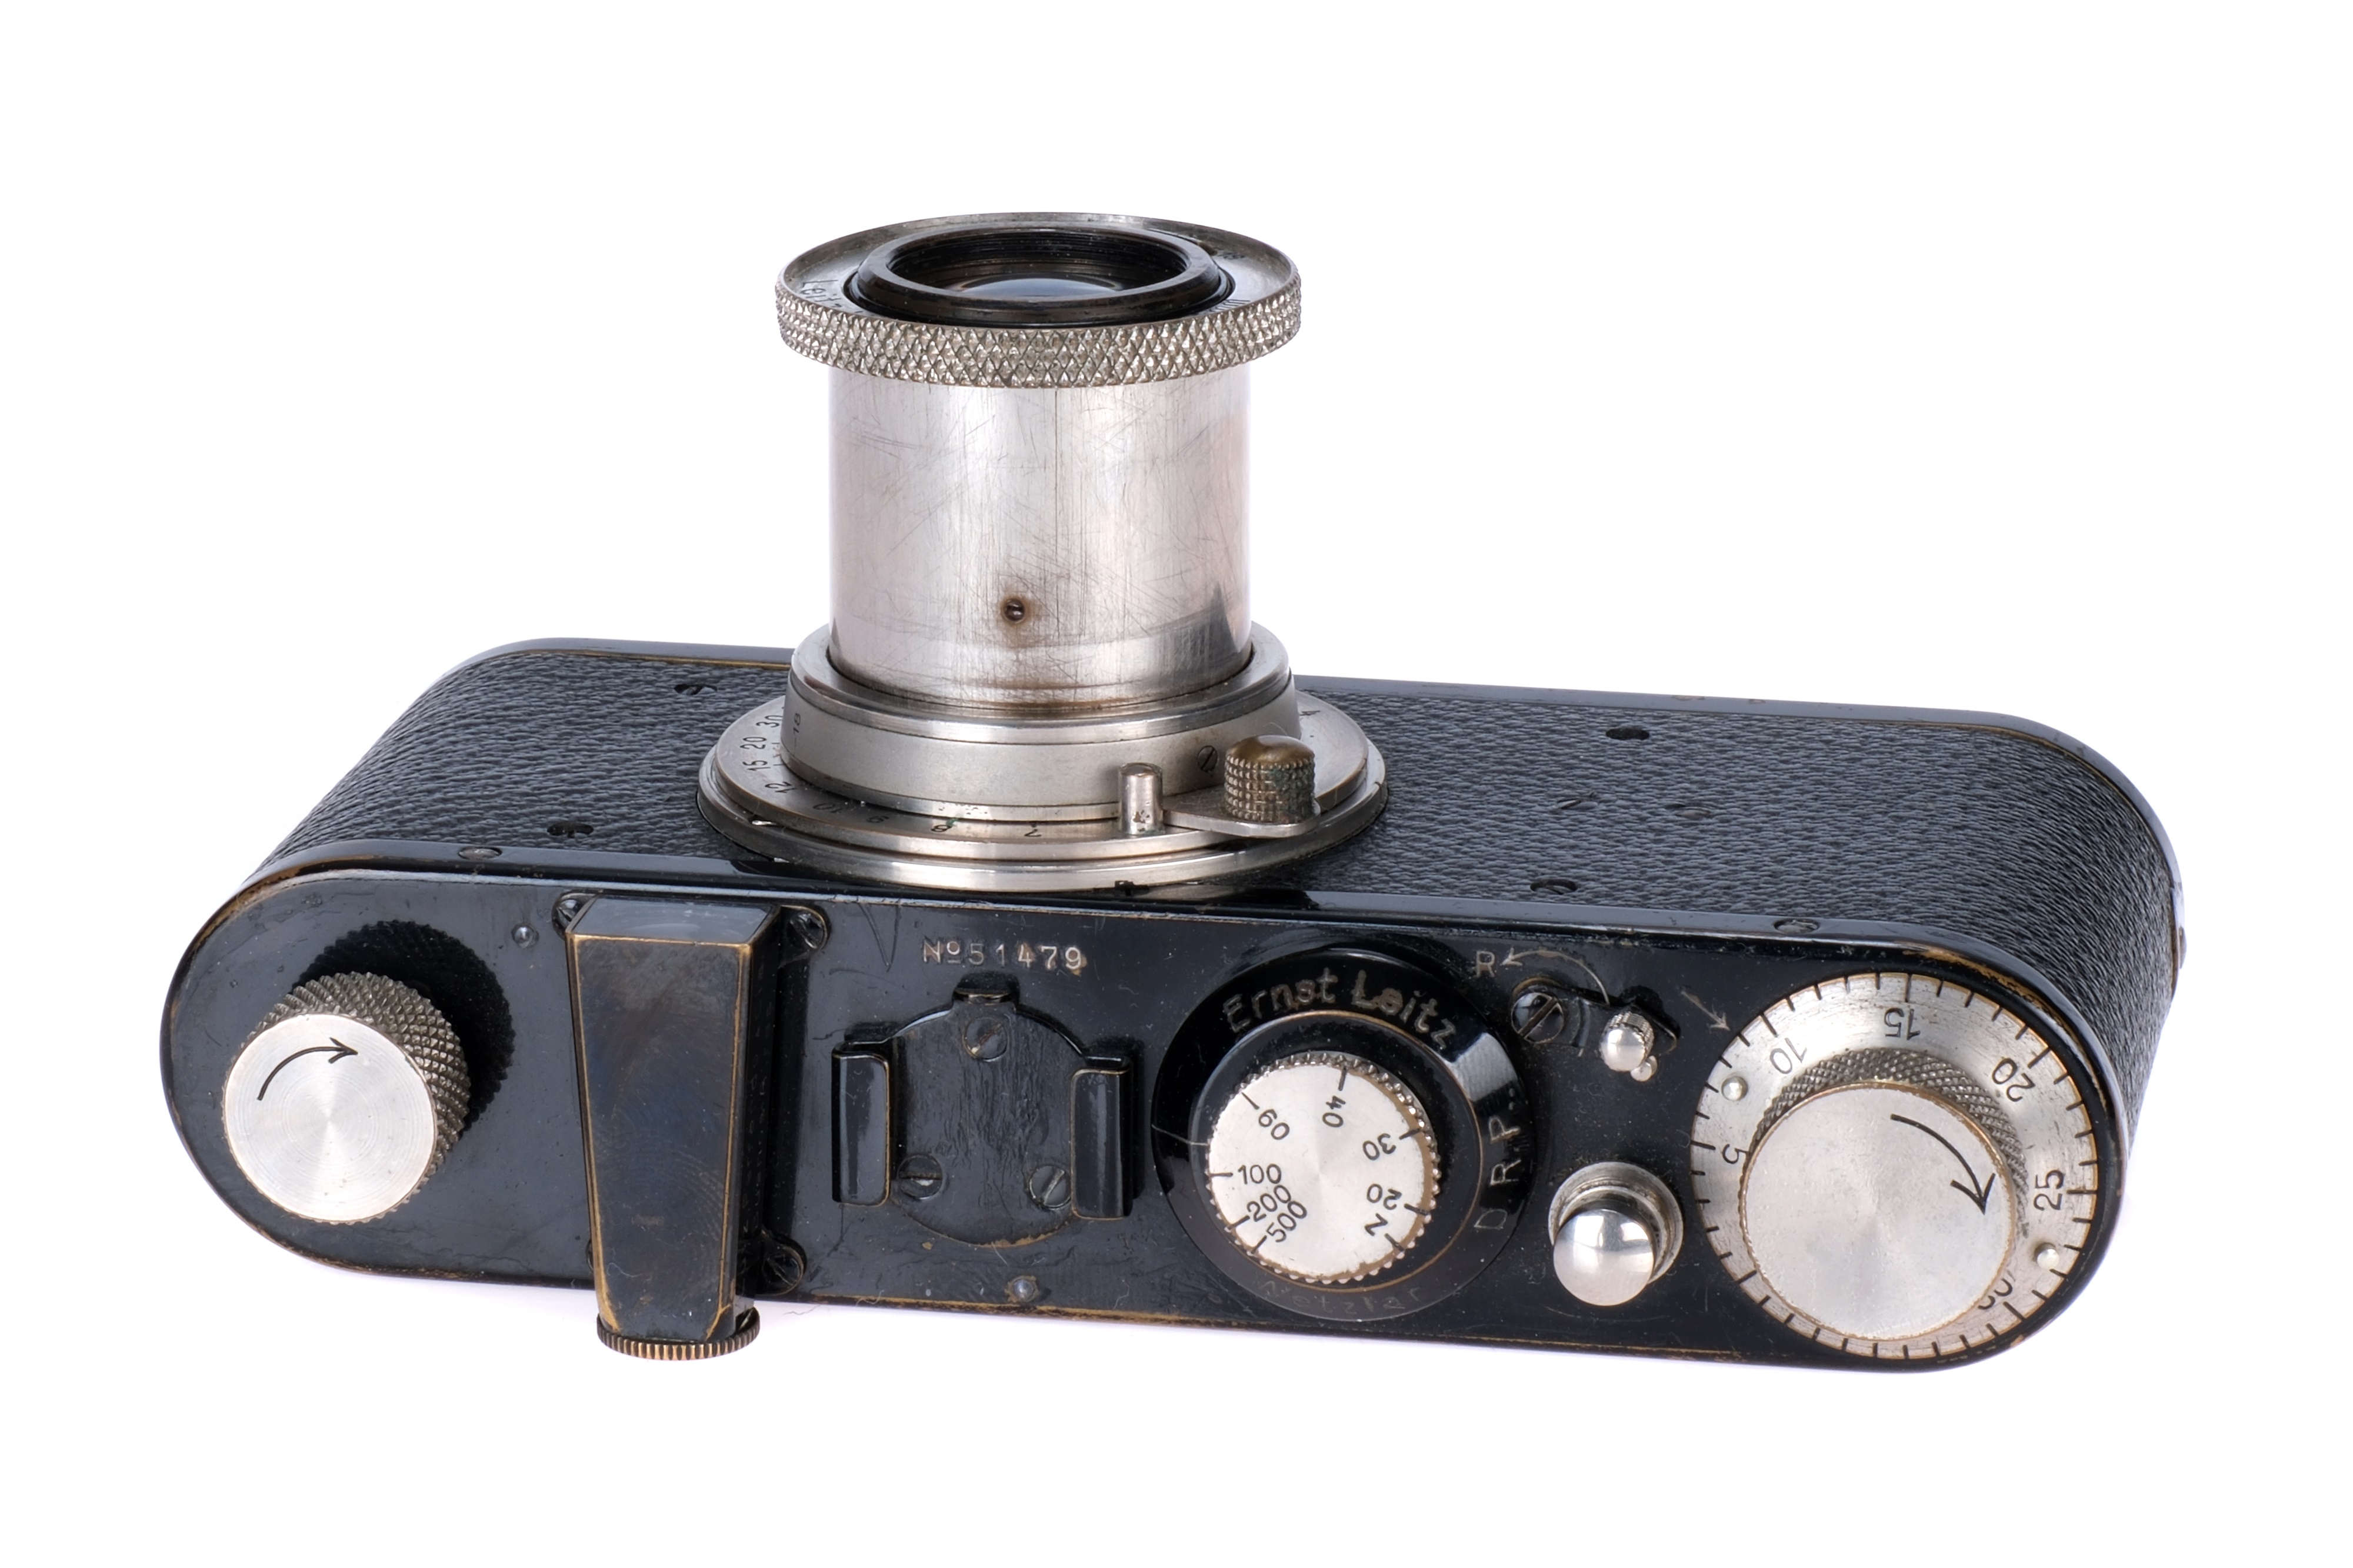 A Leica Ic '`Lutz, Ferrando & Cia' Camera, - Image 2 of 4